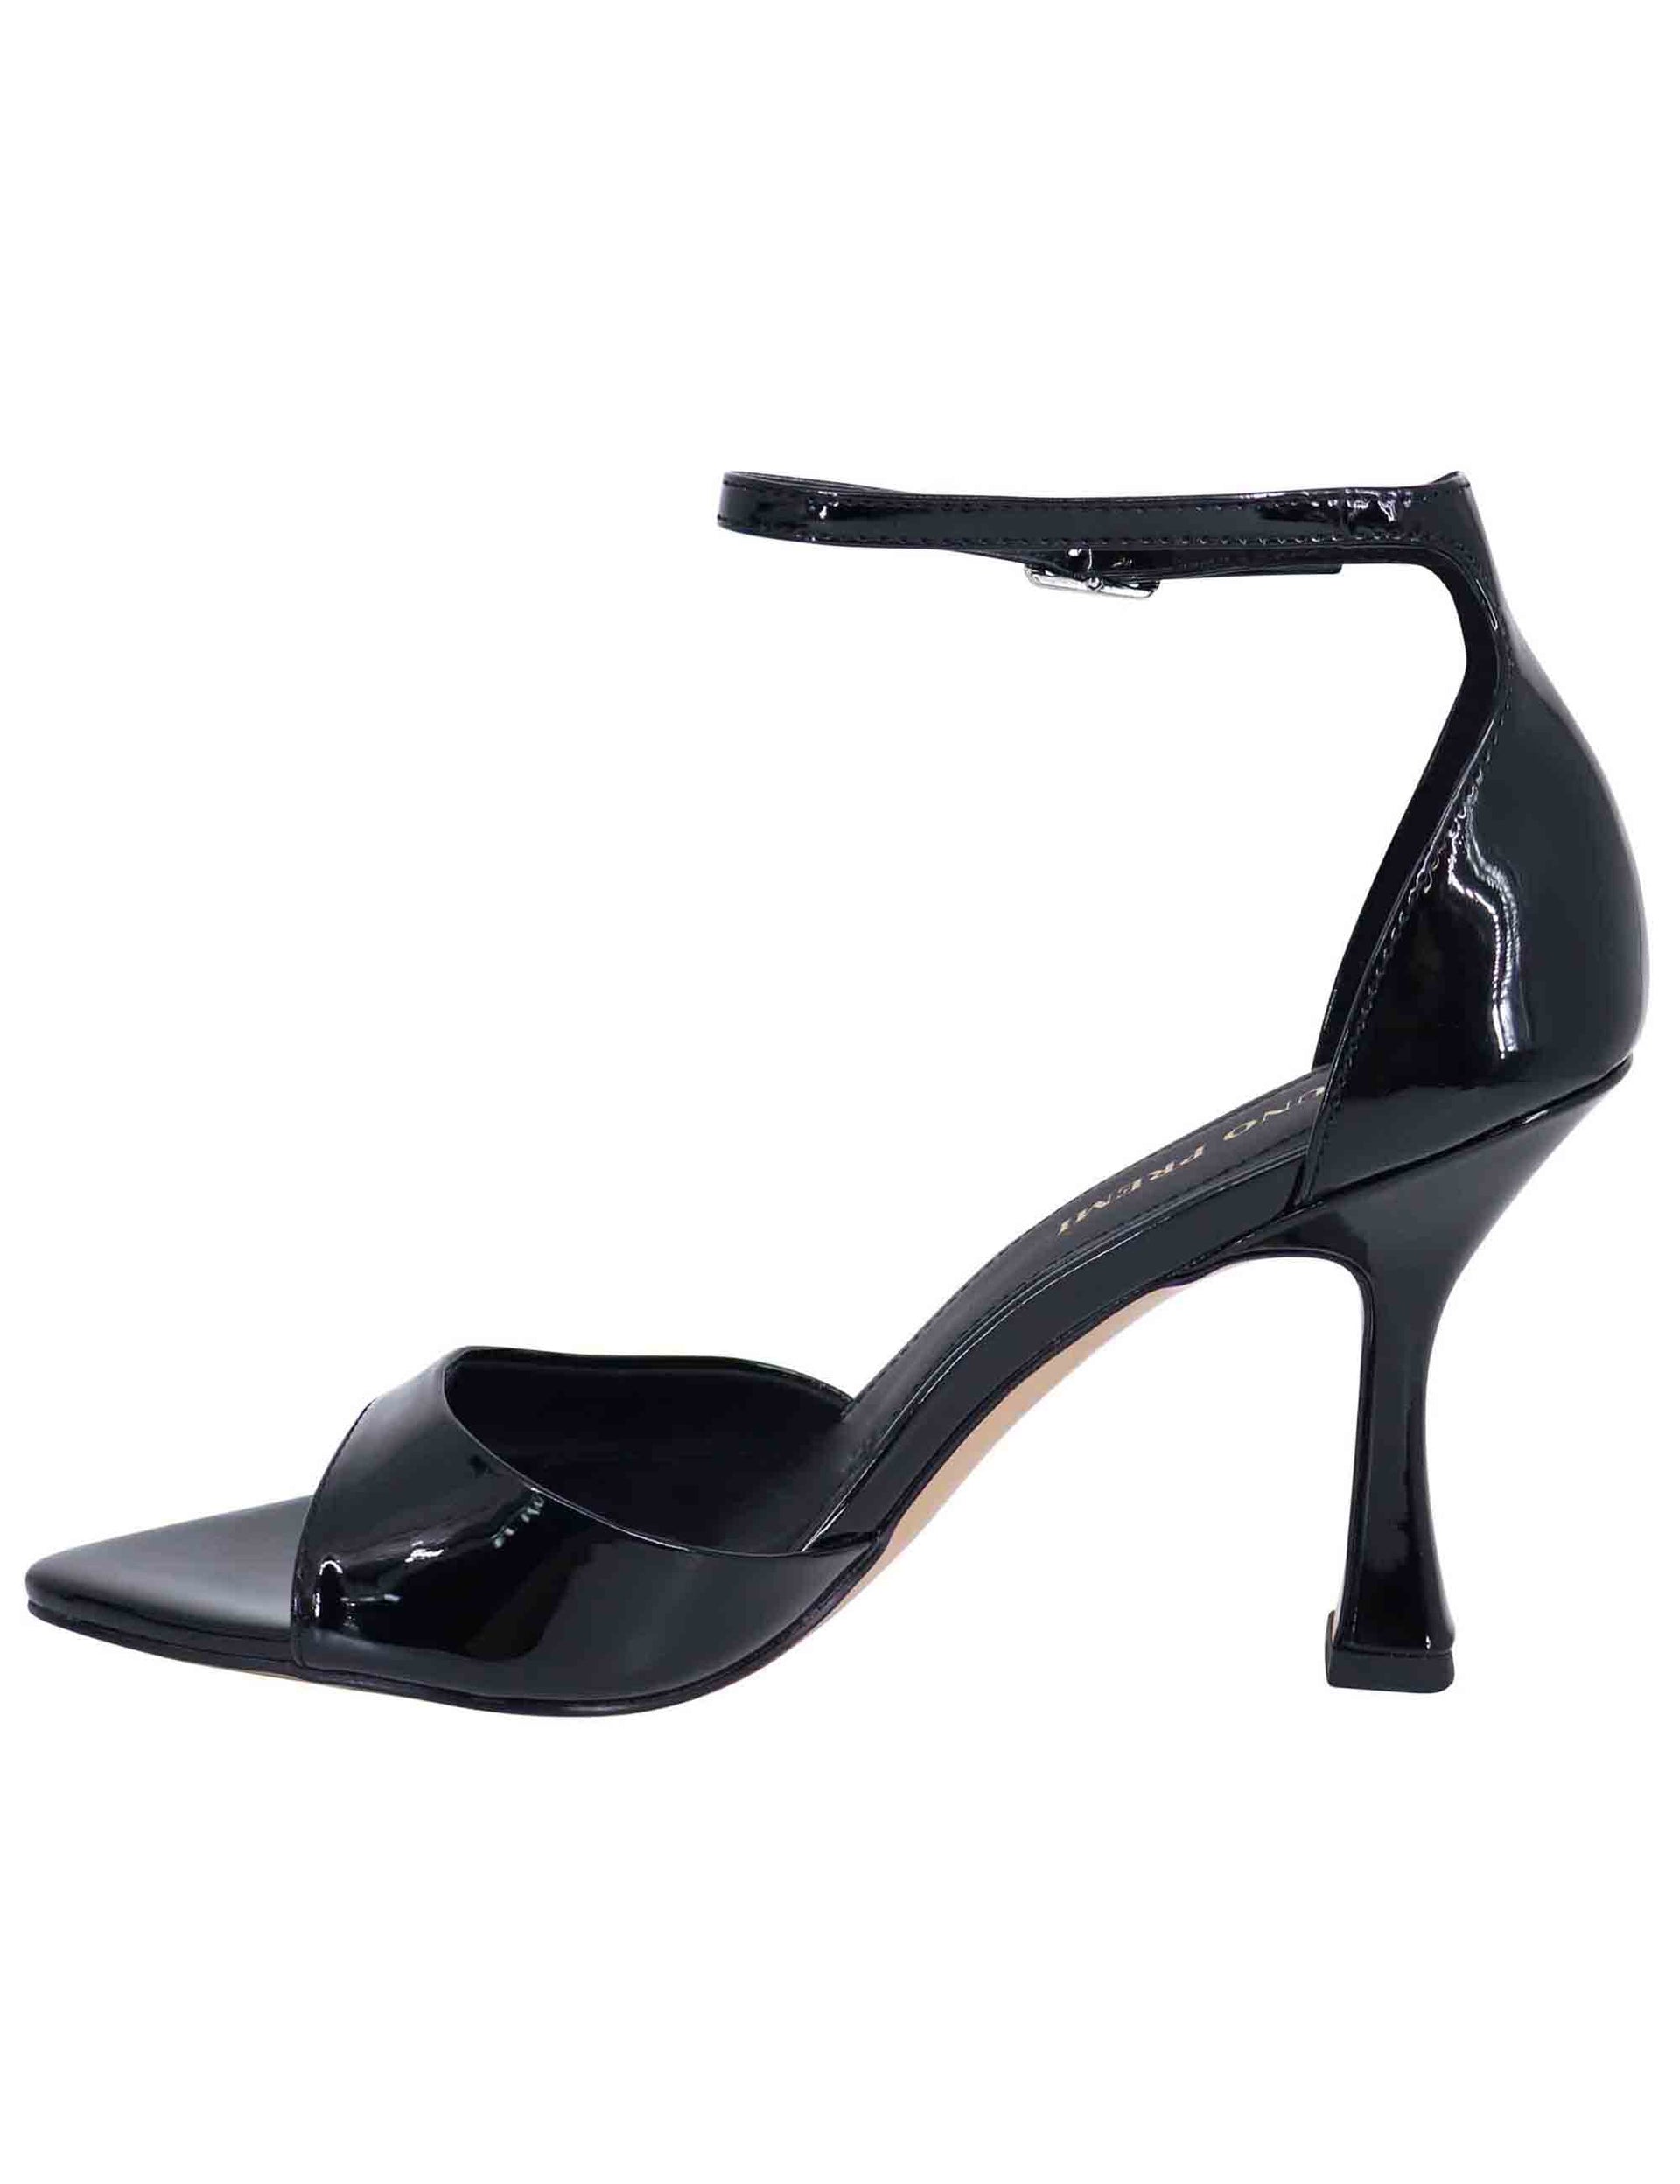 Sandali donna in vernice nera con tacco alto e cinturino alla caviglia